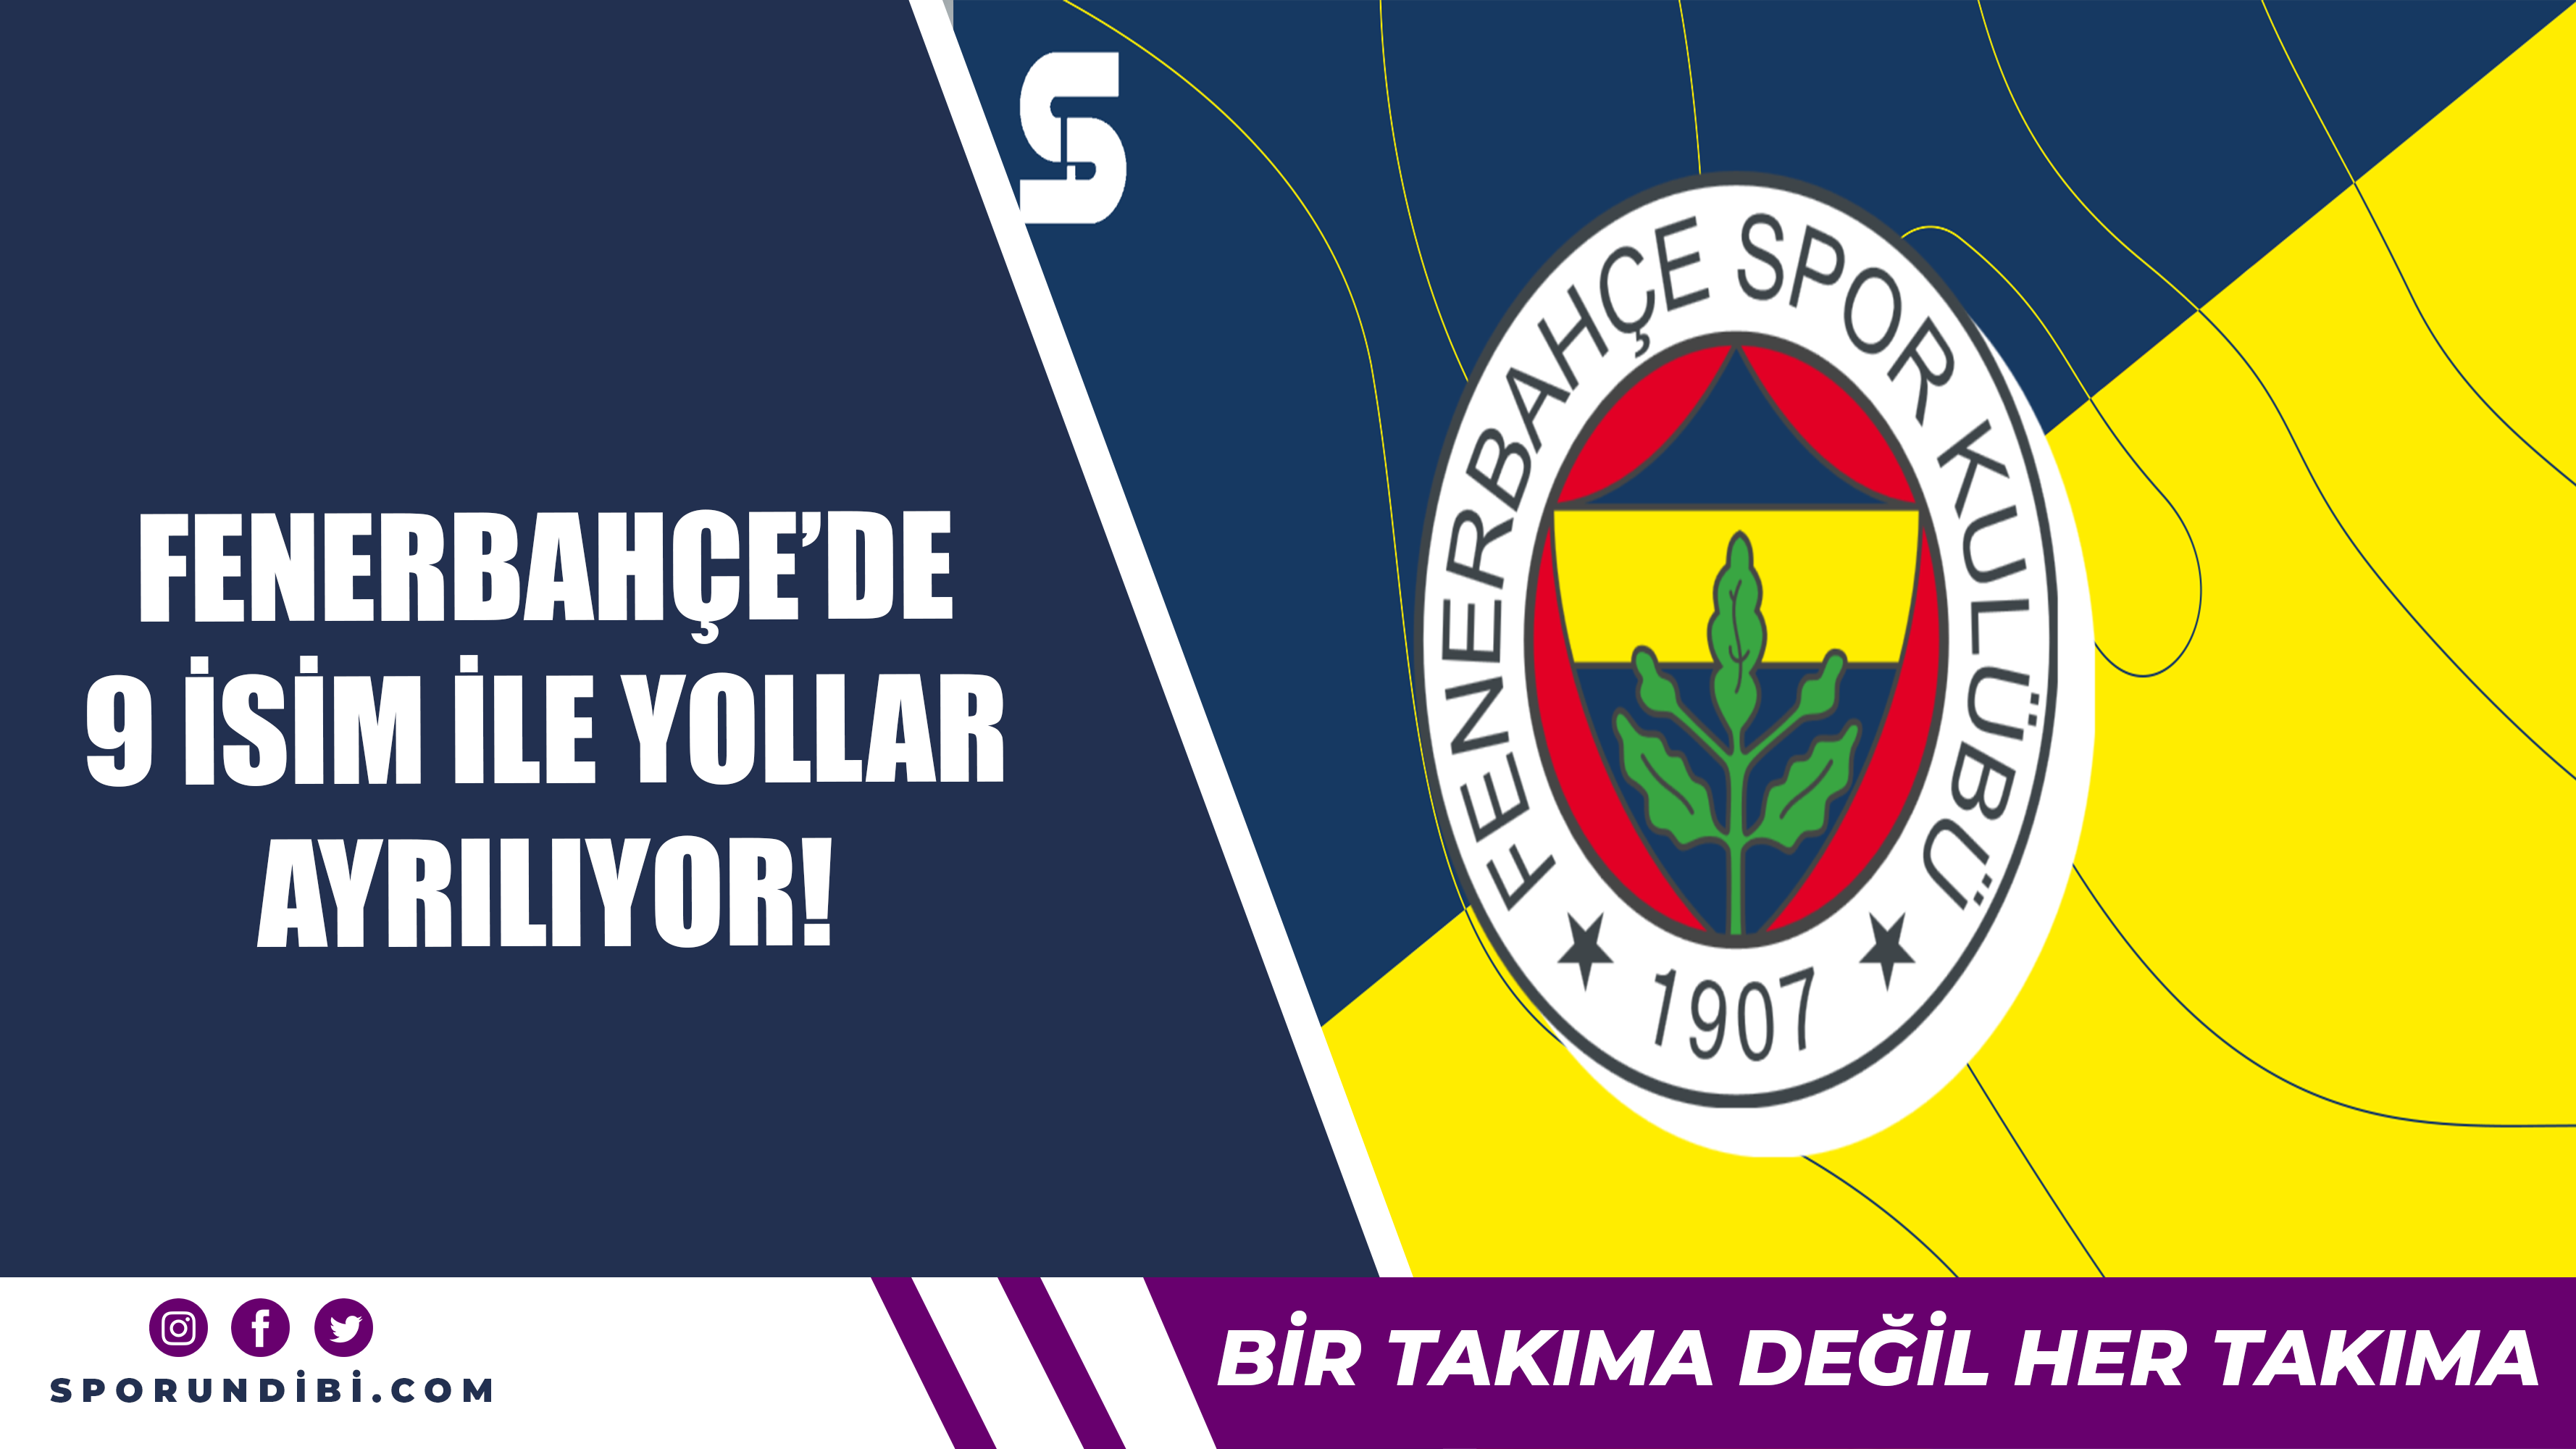 Fenerbahçe'de 9 isim ile yollar ayrılıyor!